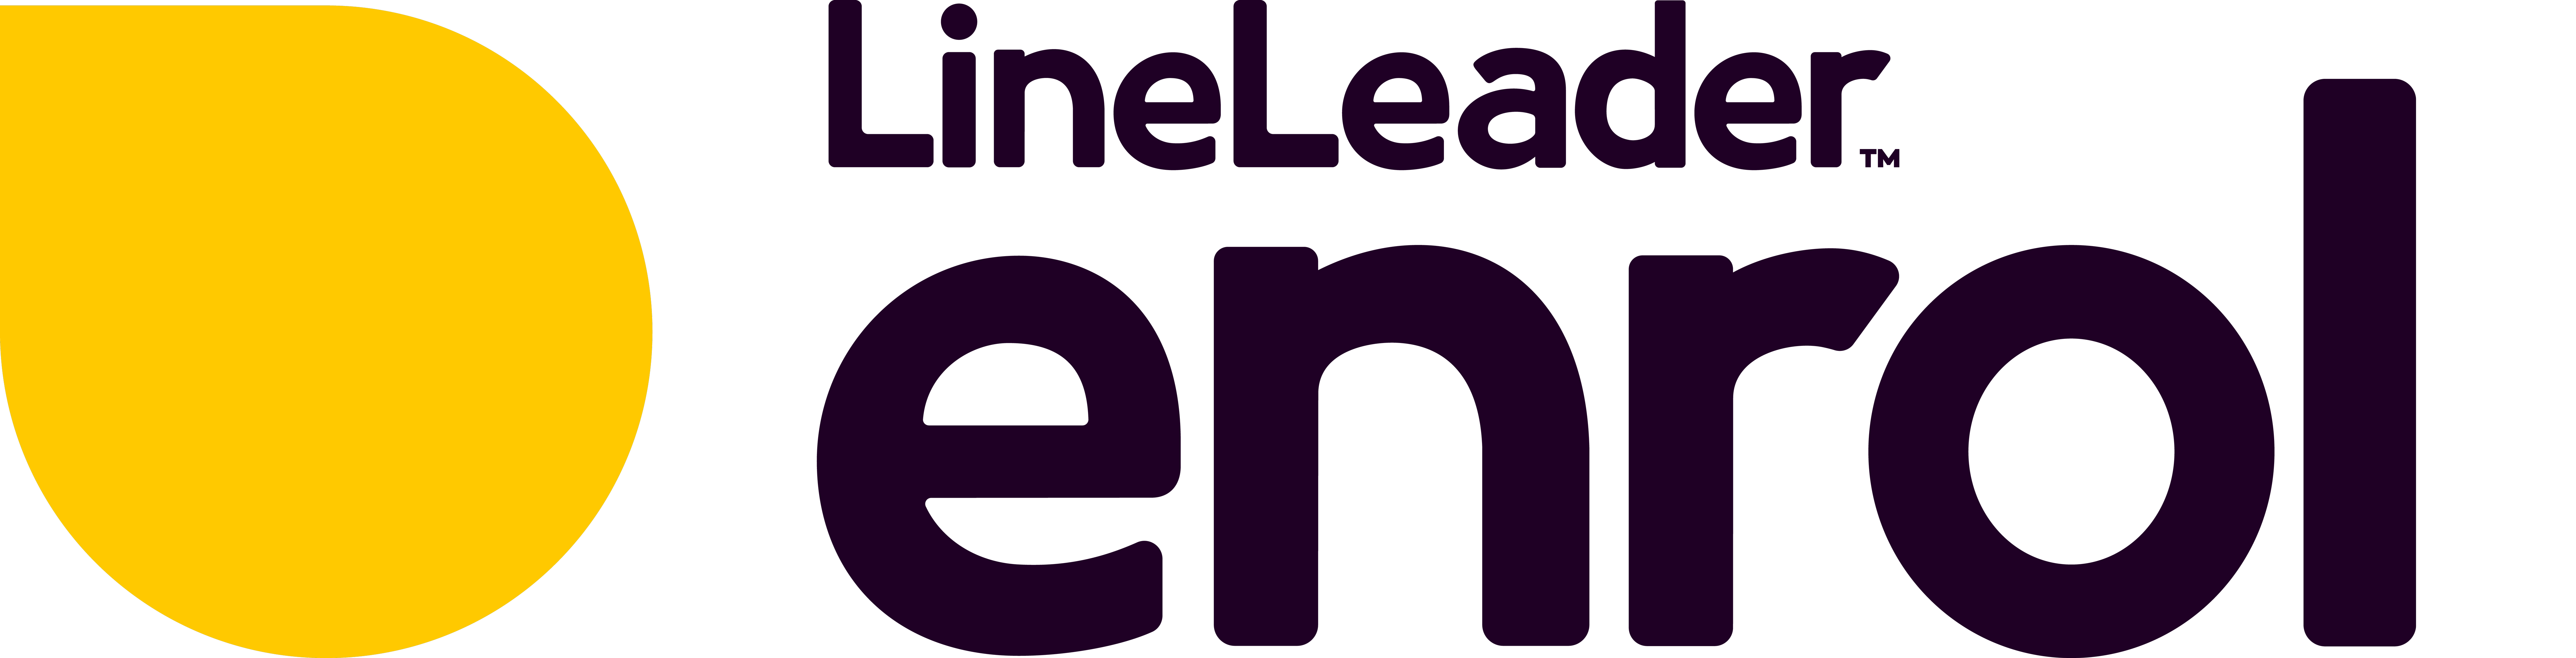 LineLeader Enrol